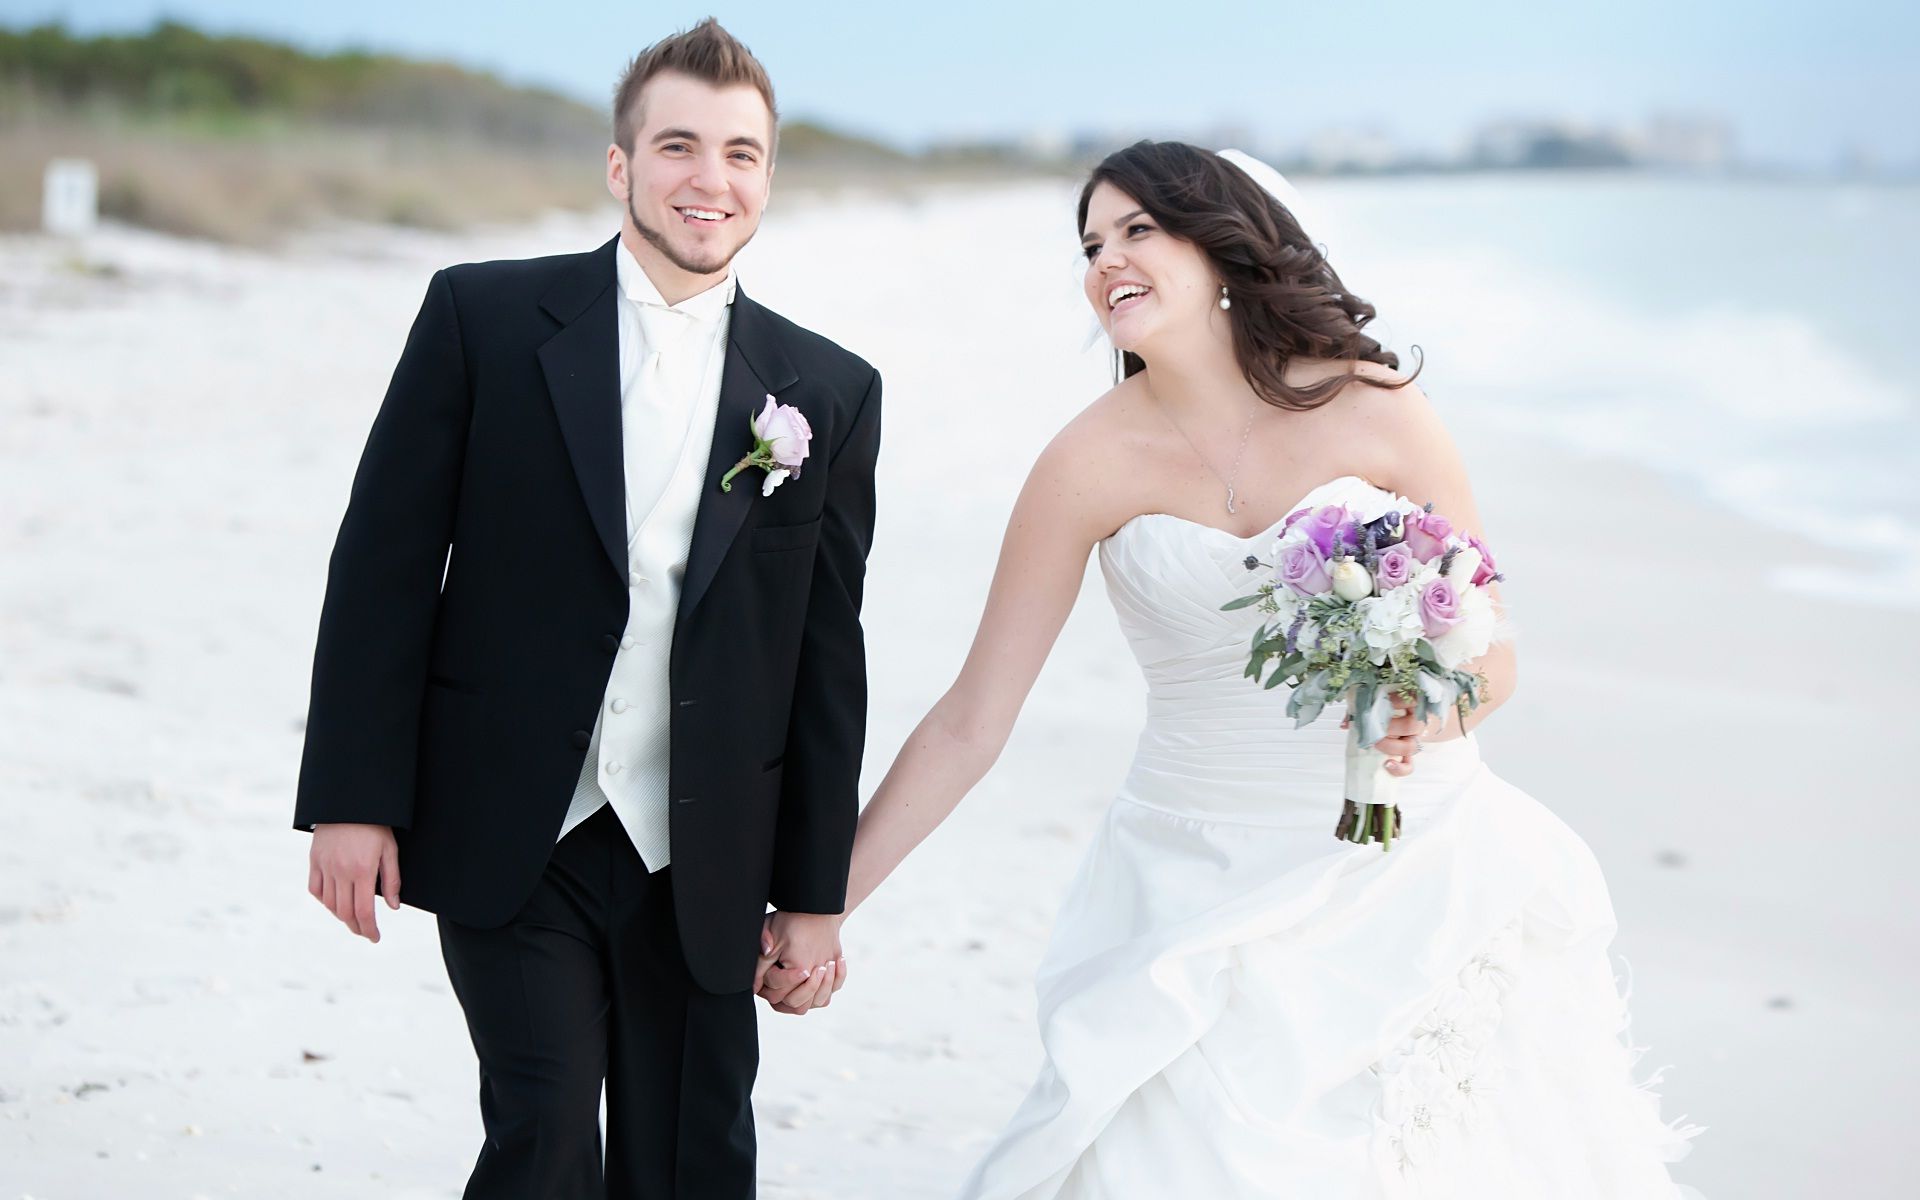 Free photo: Wedding Couple, Woman, Wedding